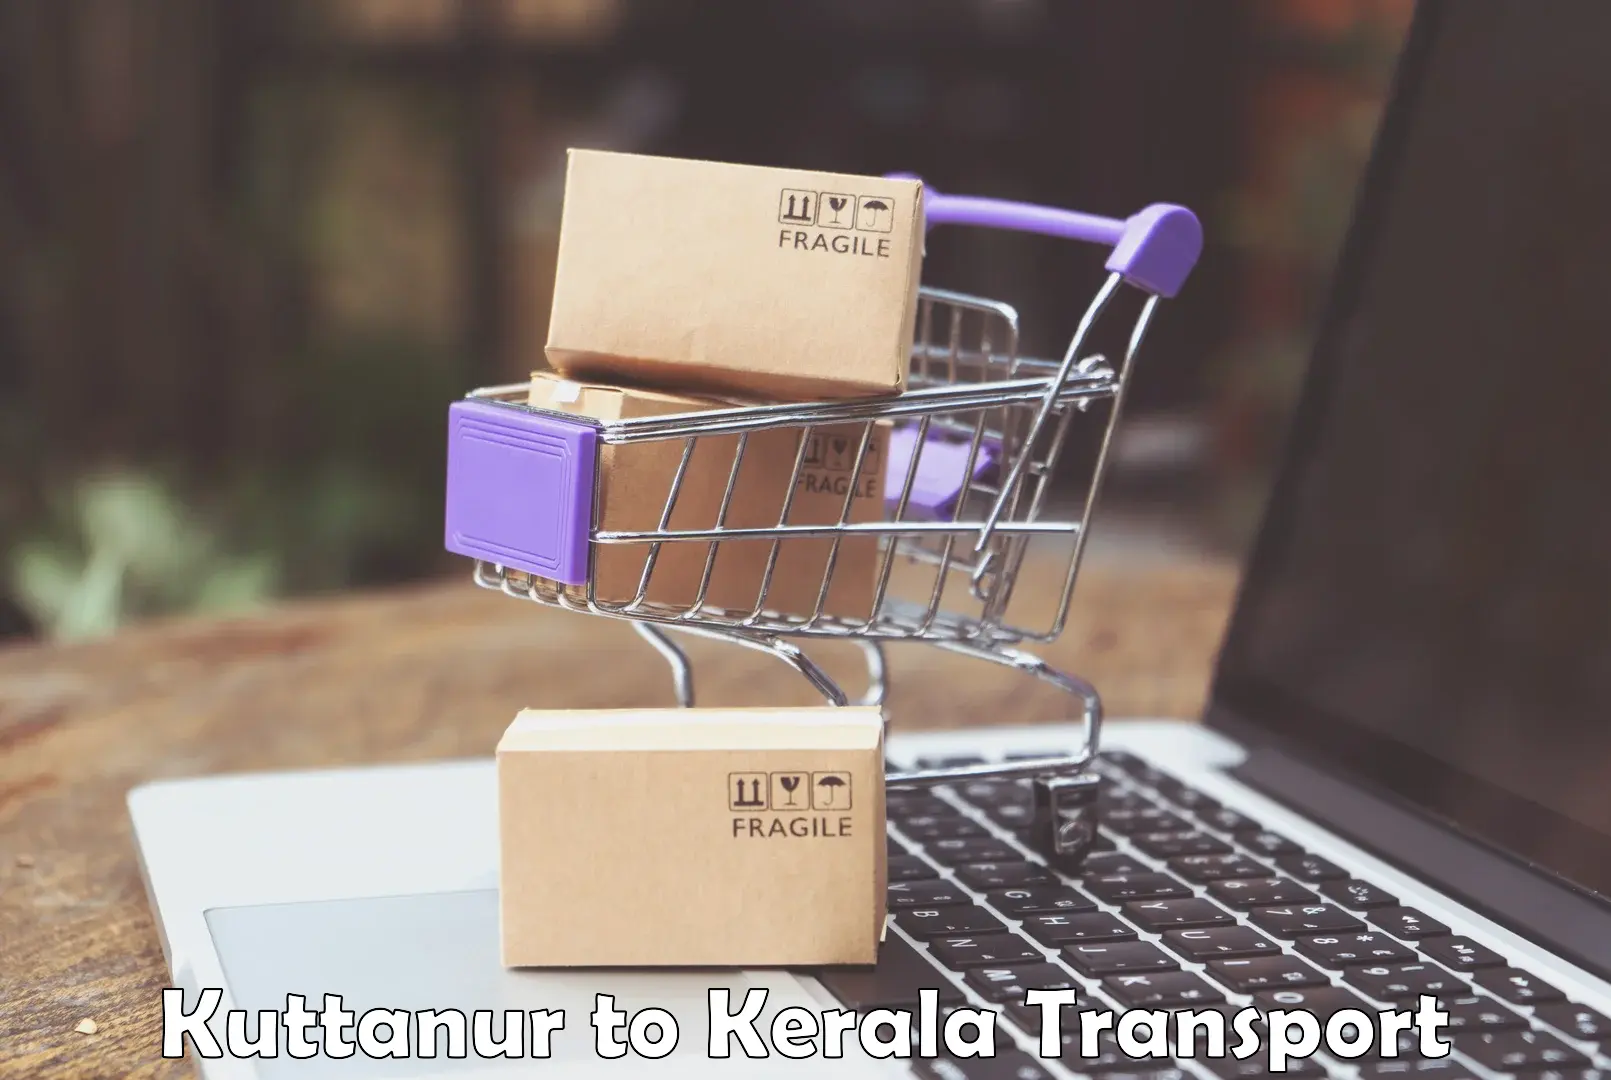 Furniture transport service Kuttanur to Punalur